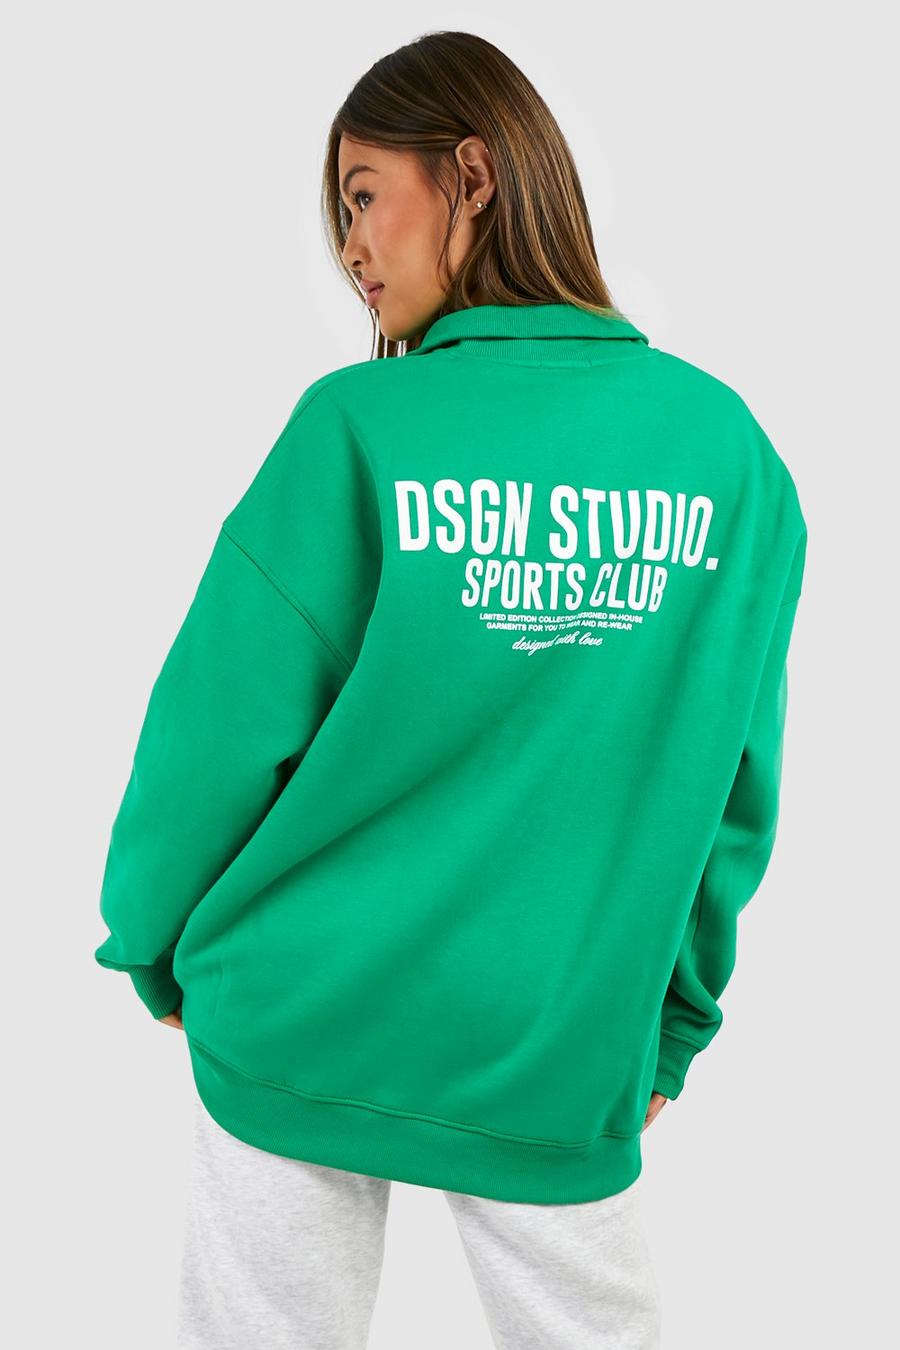 Oversize Sweatshirt mit Dsgn Studio Sports Club Print und halbem Reißverschluss, Green